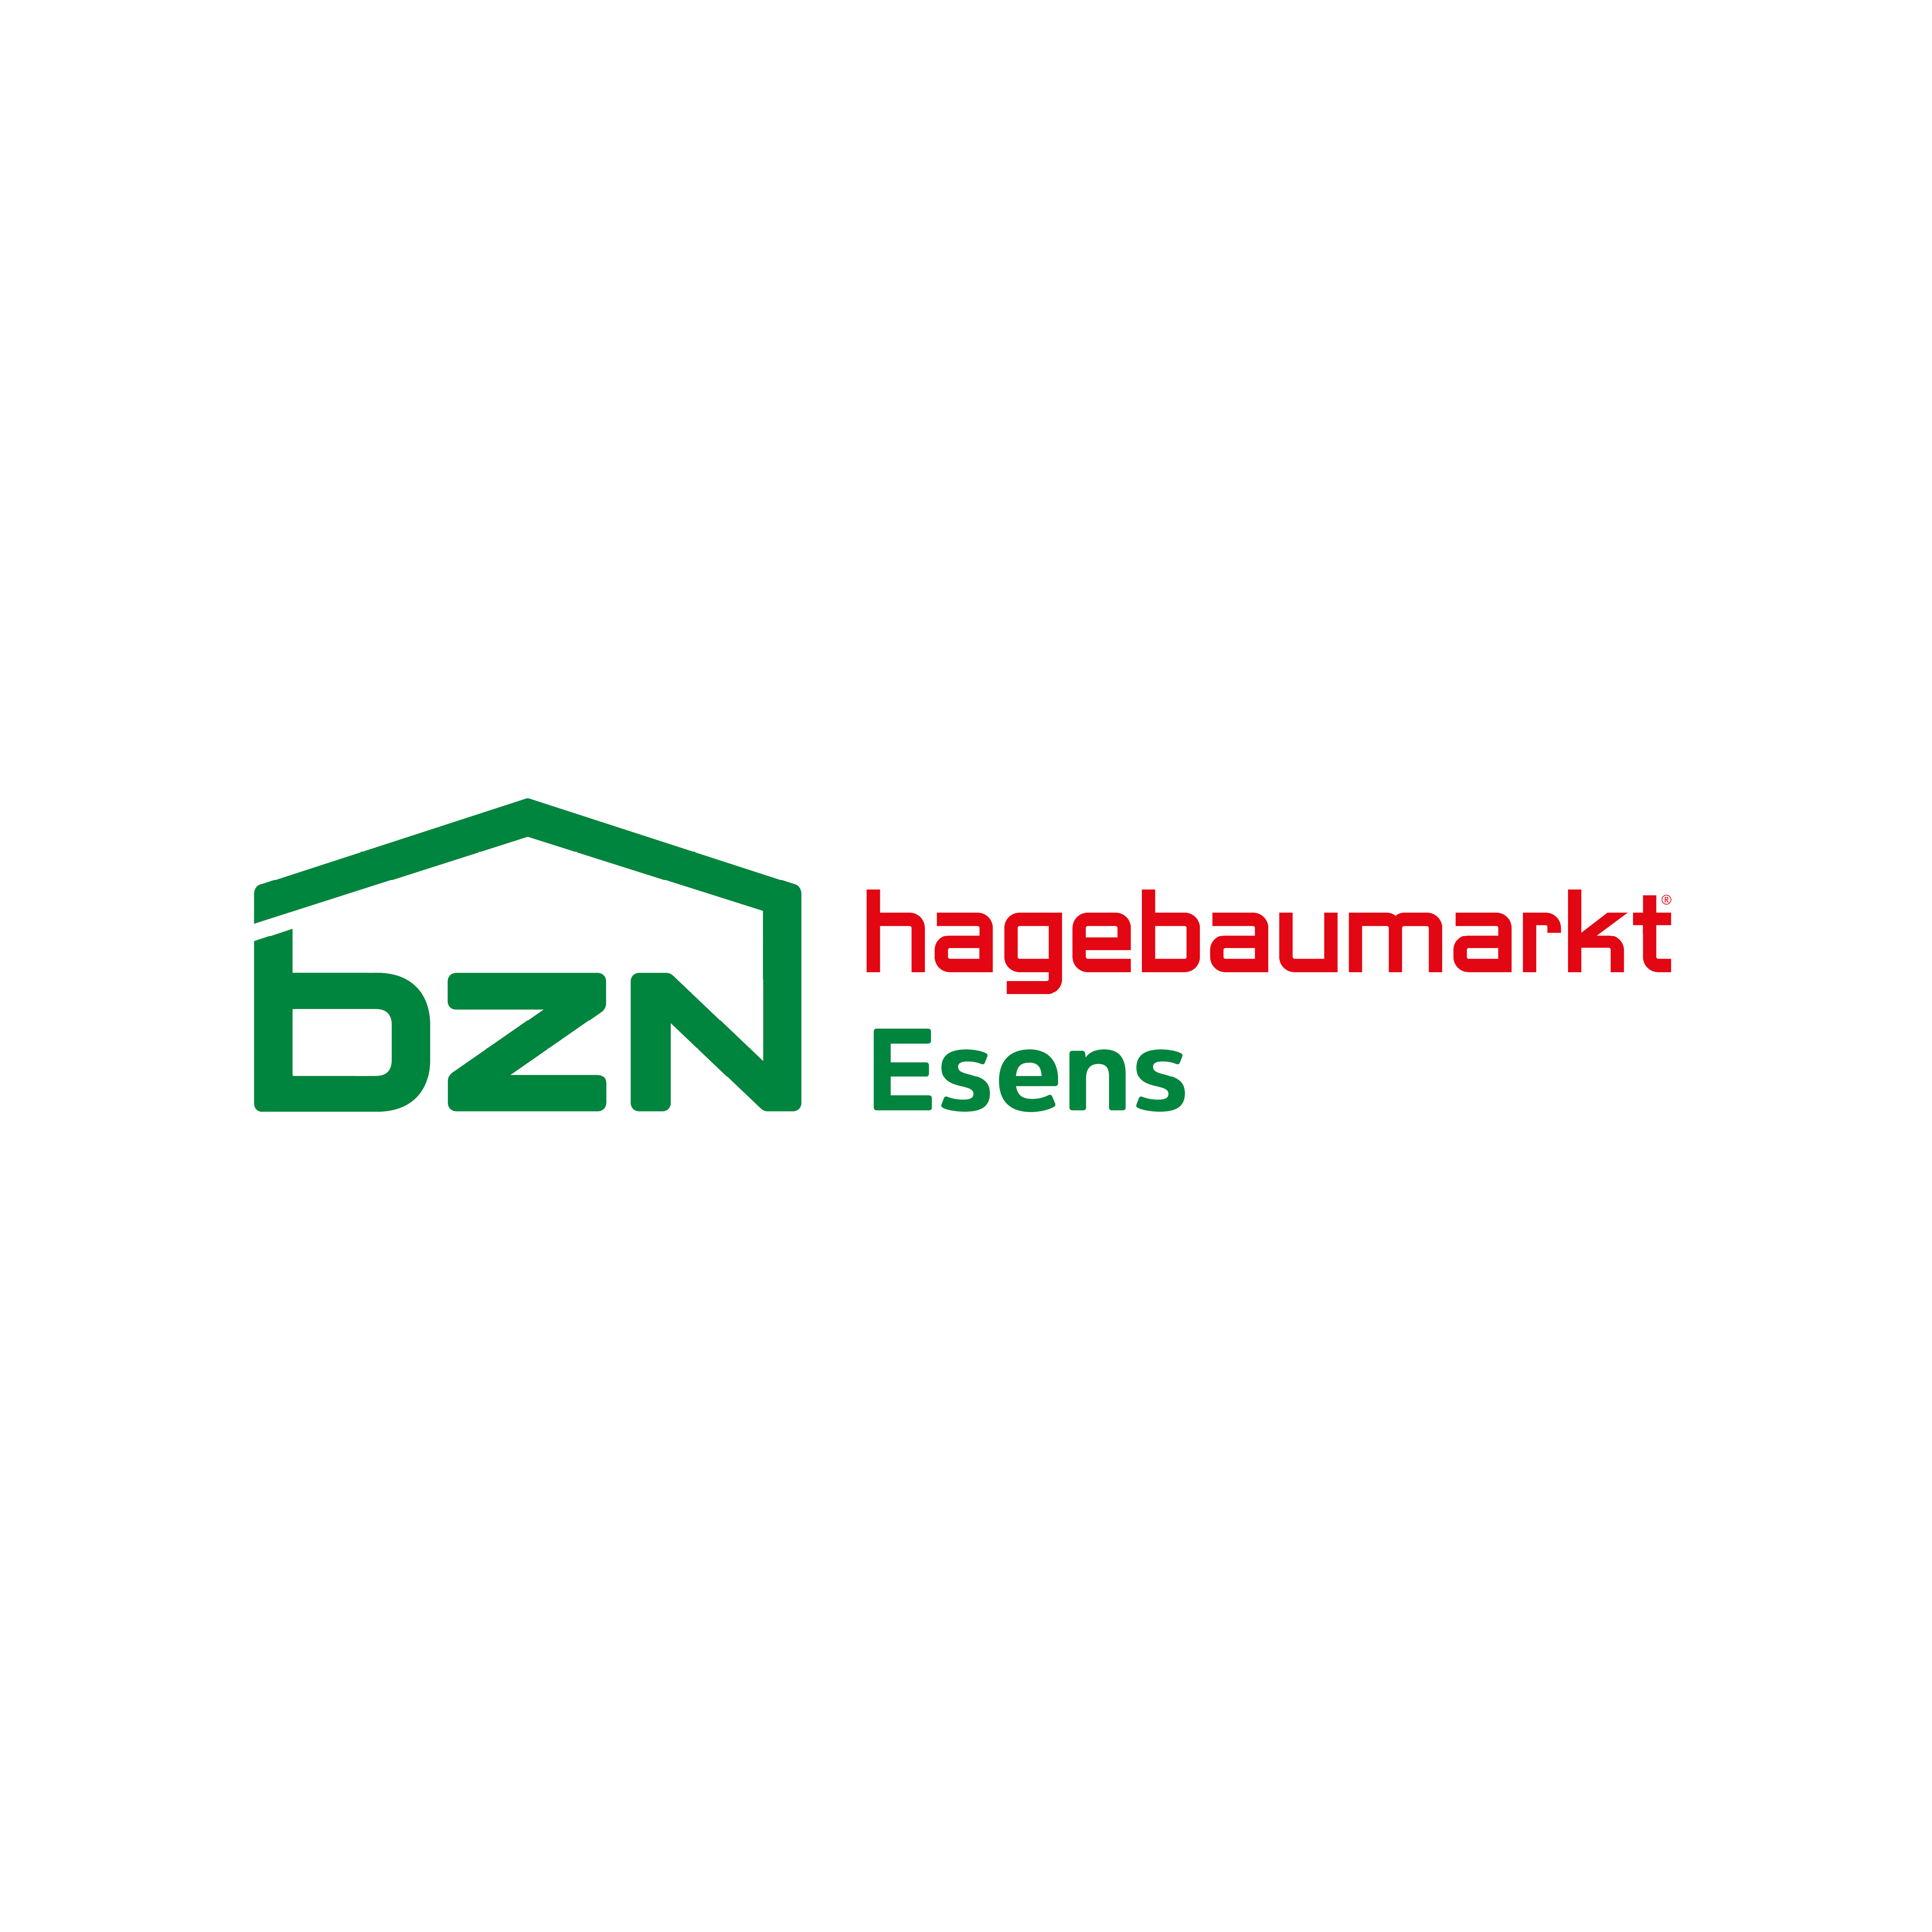 Logo von BZN Hagebaumarkt Esens GmbH & Co. KG